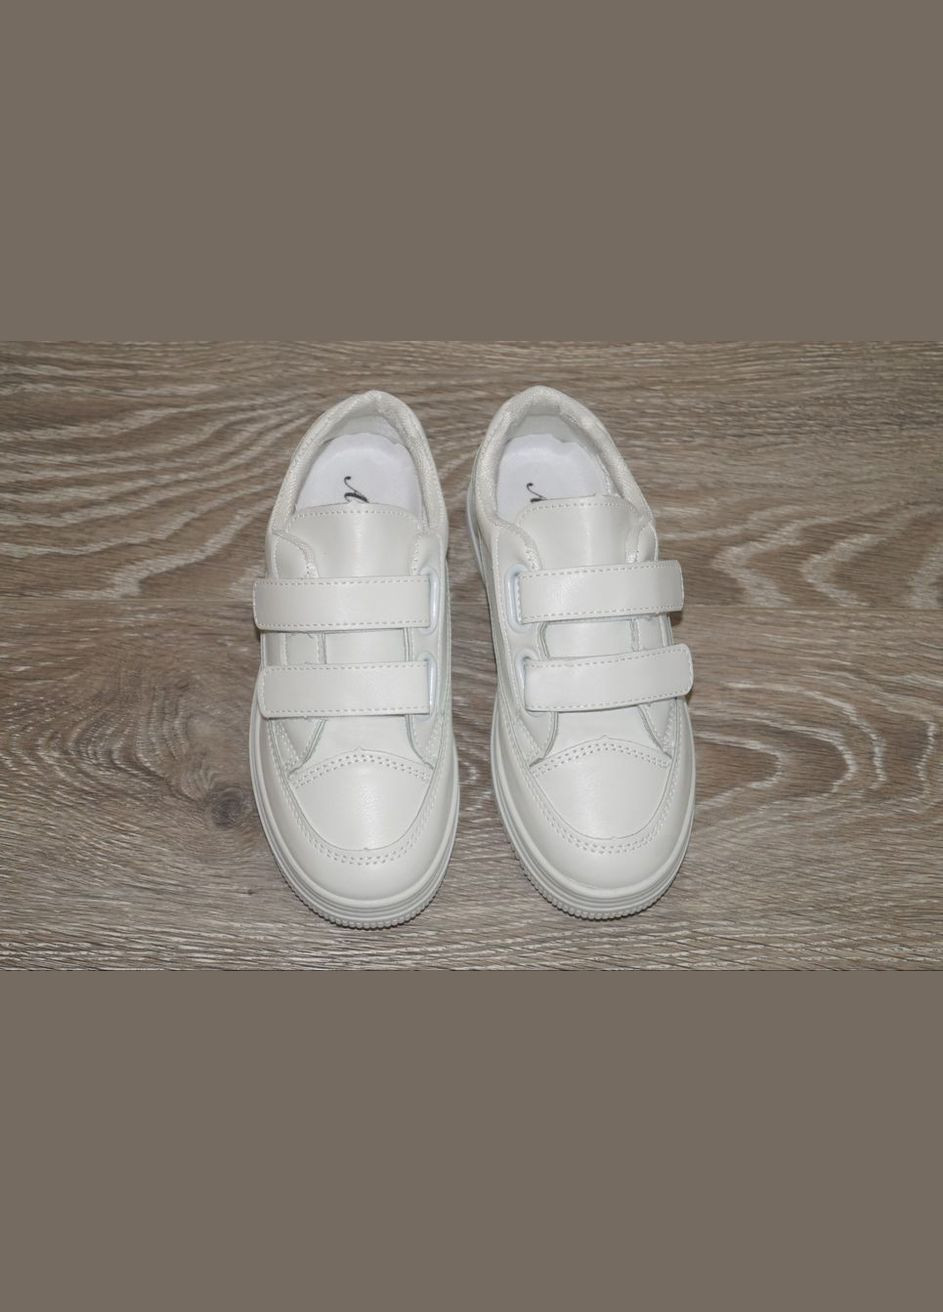 Белые демисезонные кроссовки детские белые ABA 206-1